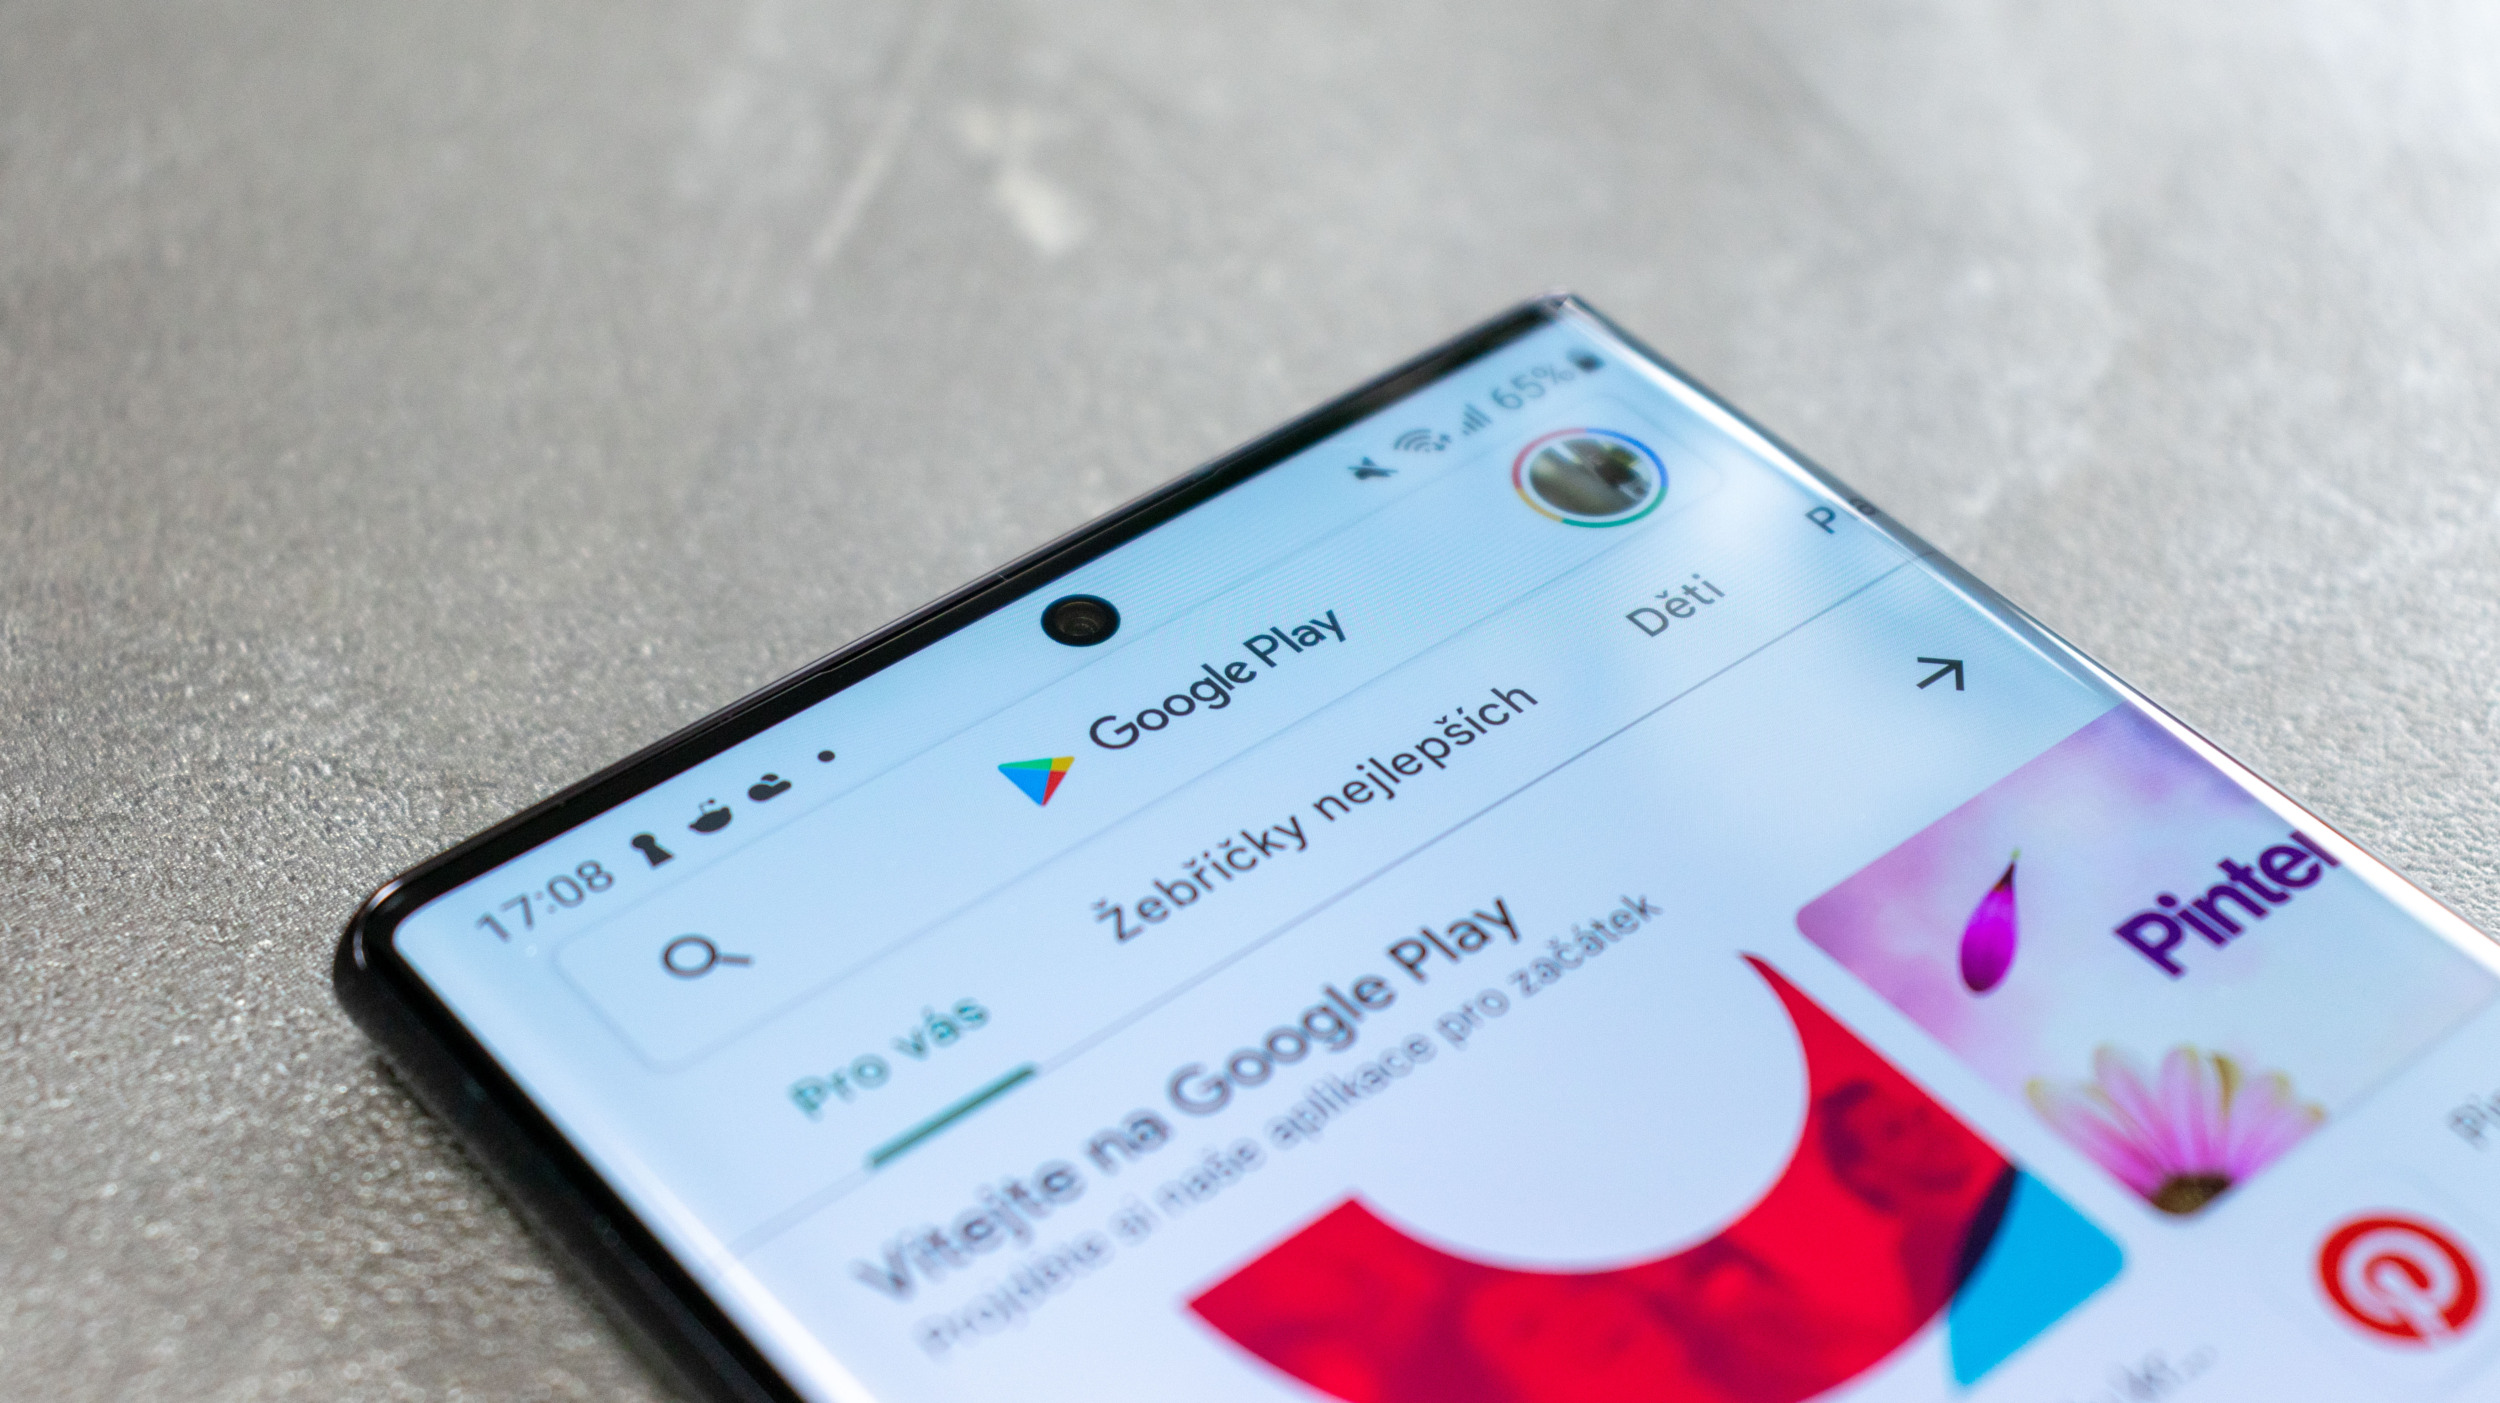 Google zakročil proti instalování Android aplikací z neznámých zdrojů